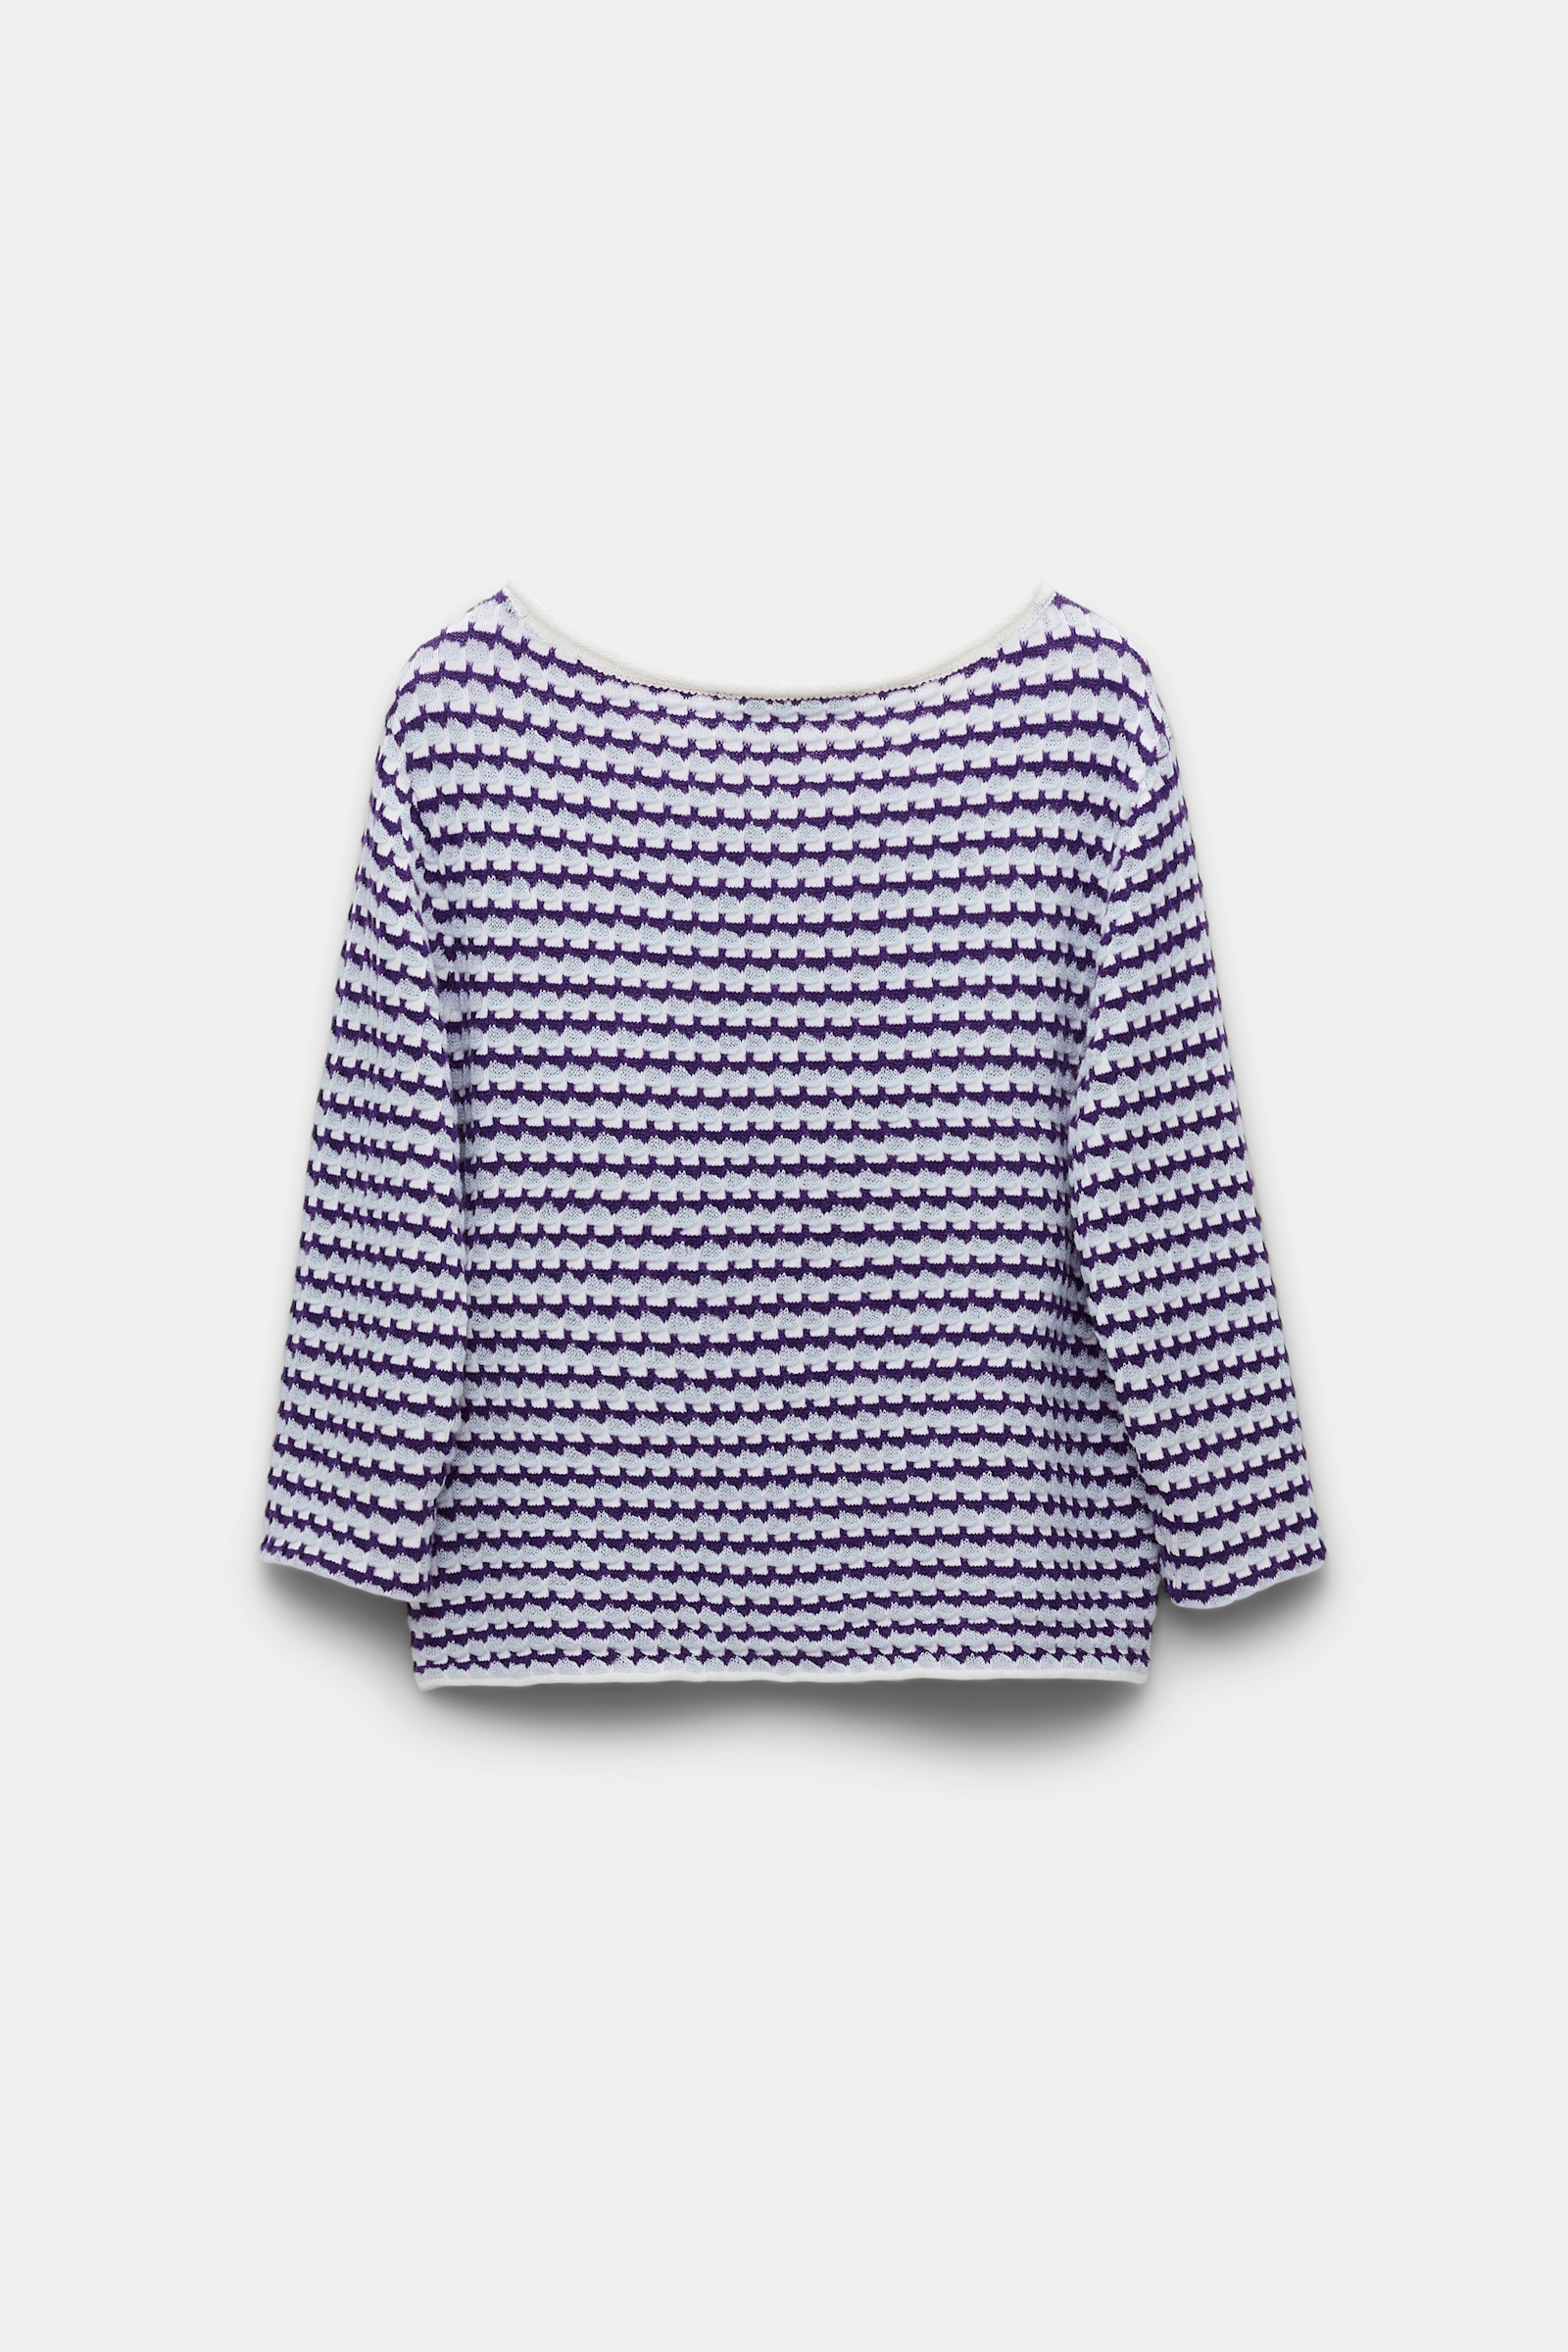 Dorothee Schumacher Jacquard knit top with bateaux neckline purple blue white mix